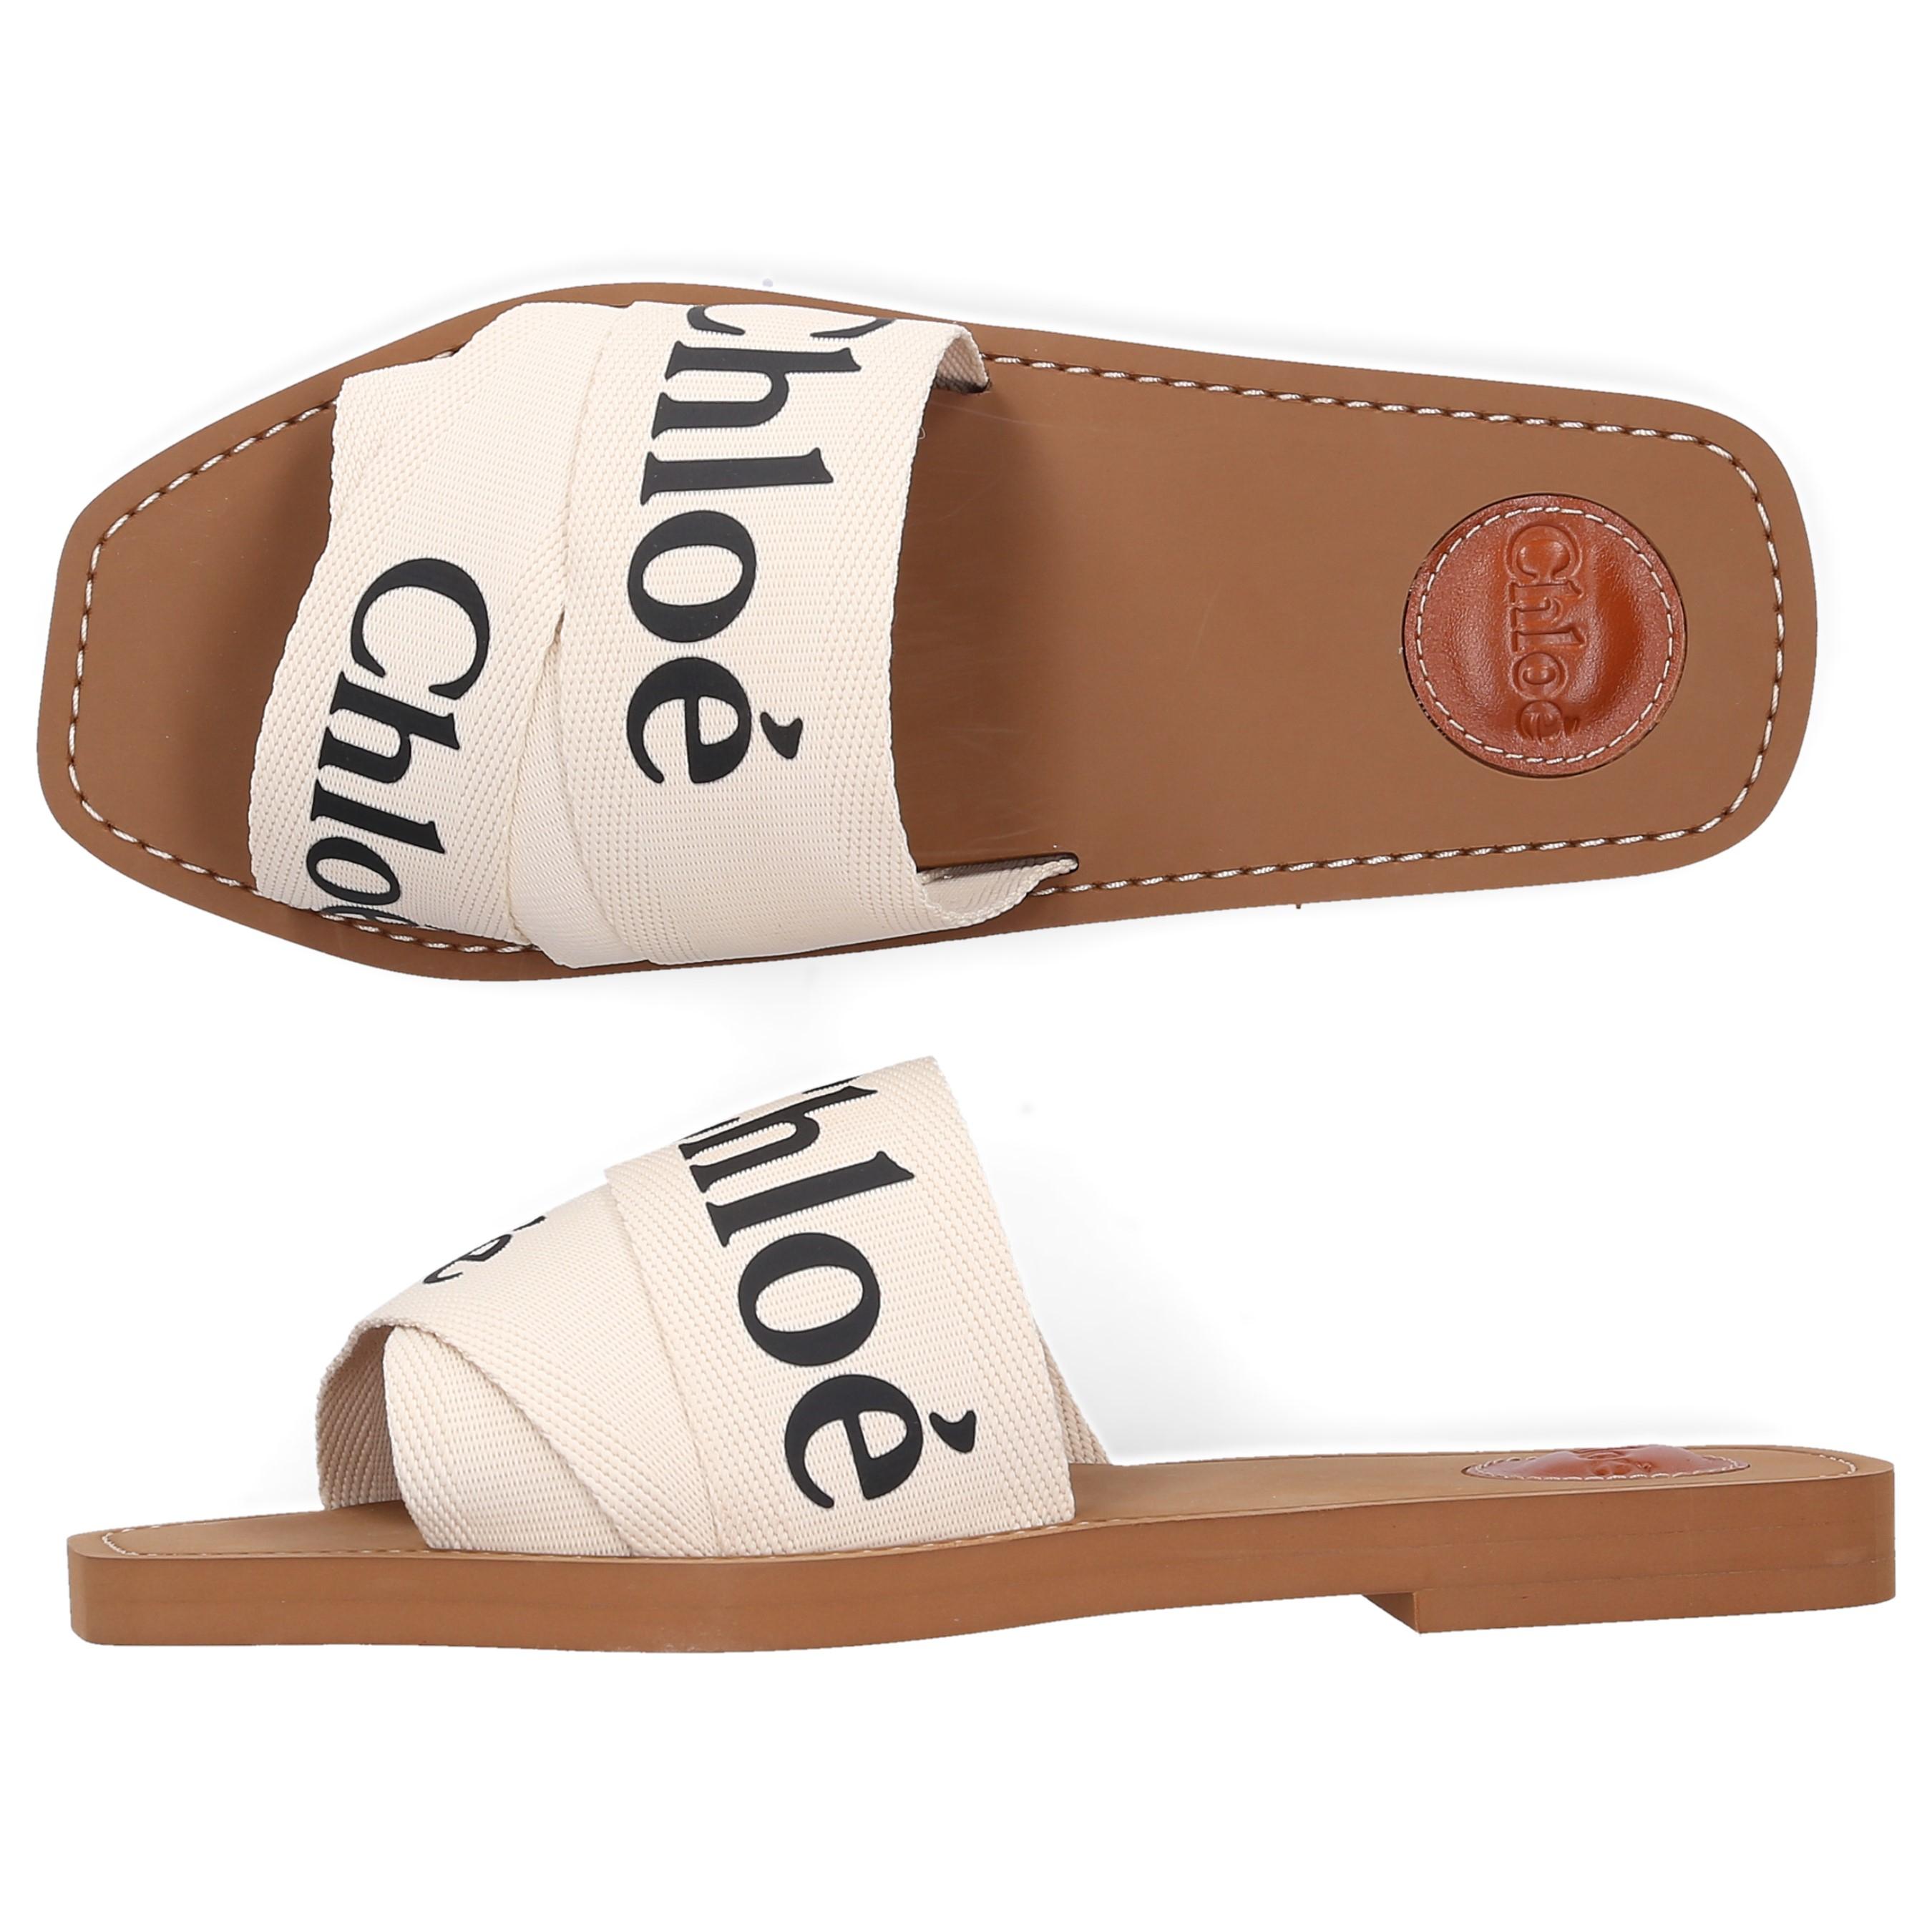 Chloé Slide Sandals | Online www.institutodelaliento.com